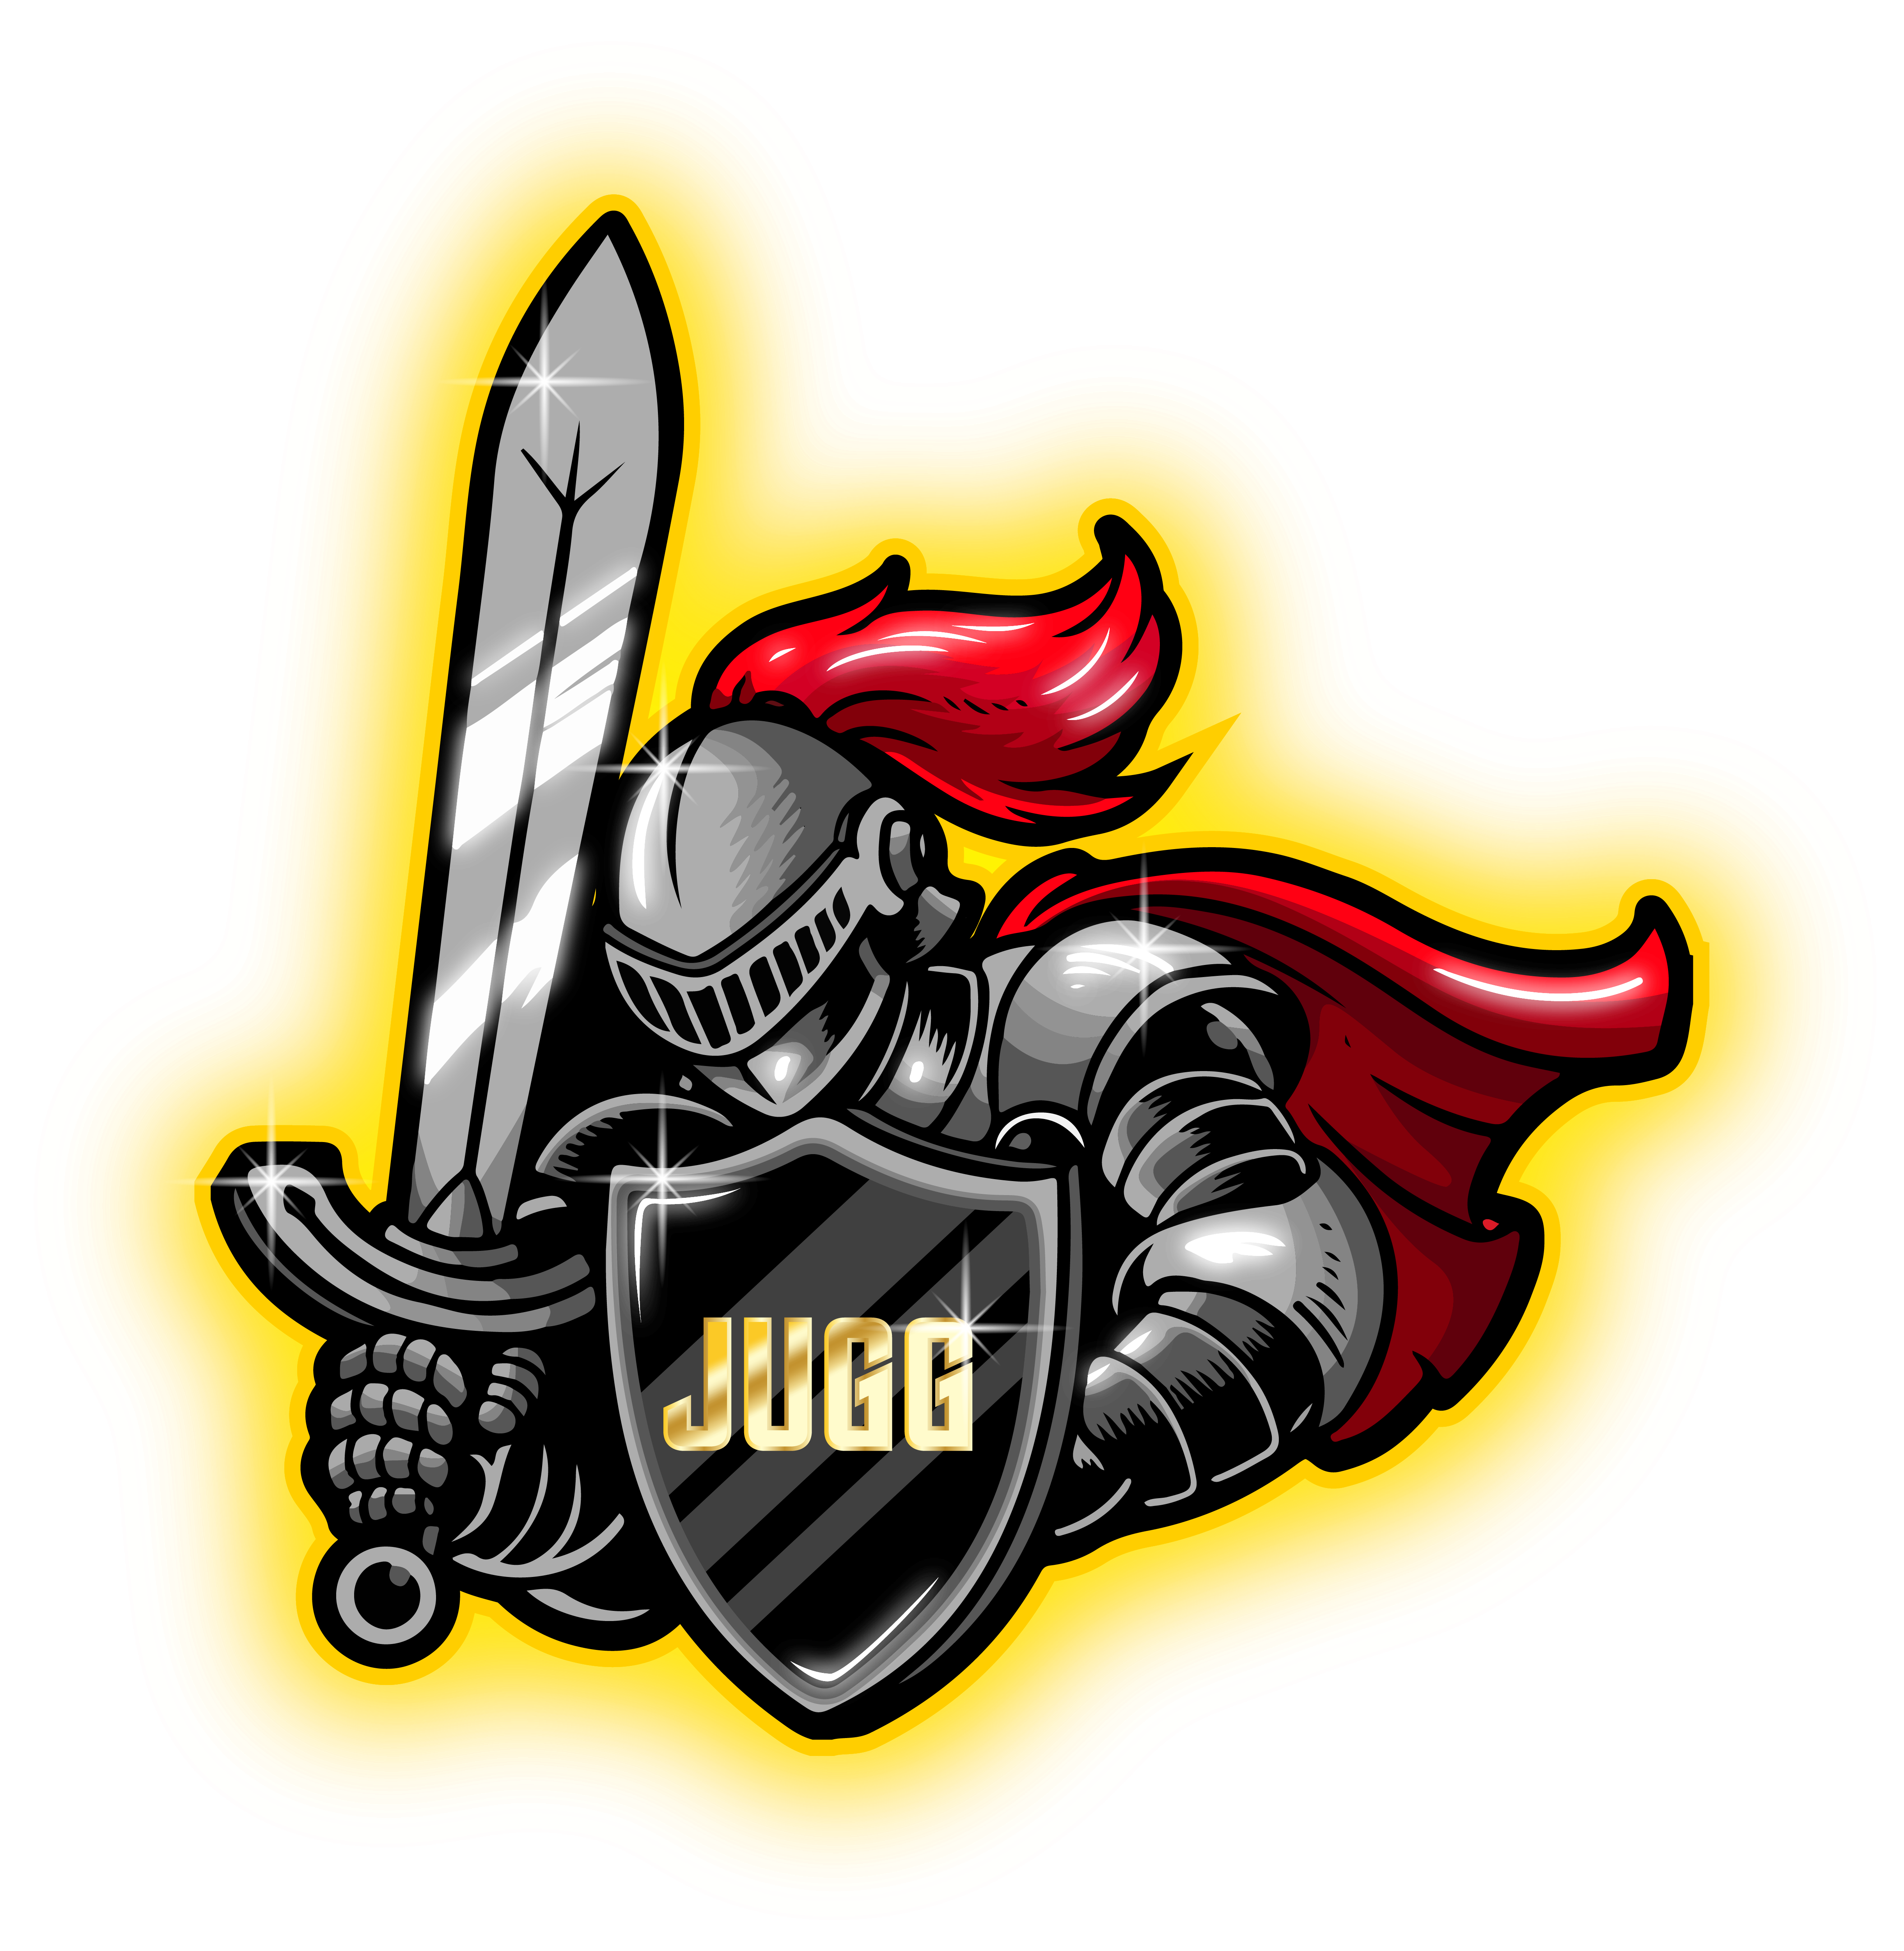 Knights of Honor [JUGG]